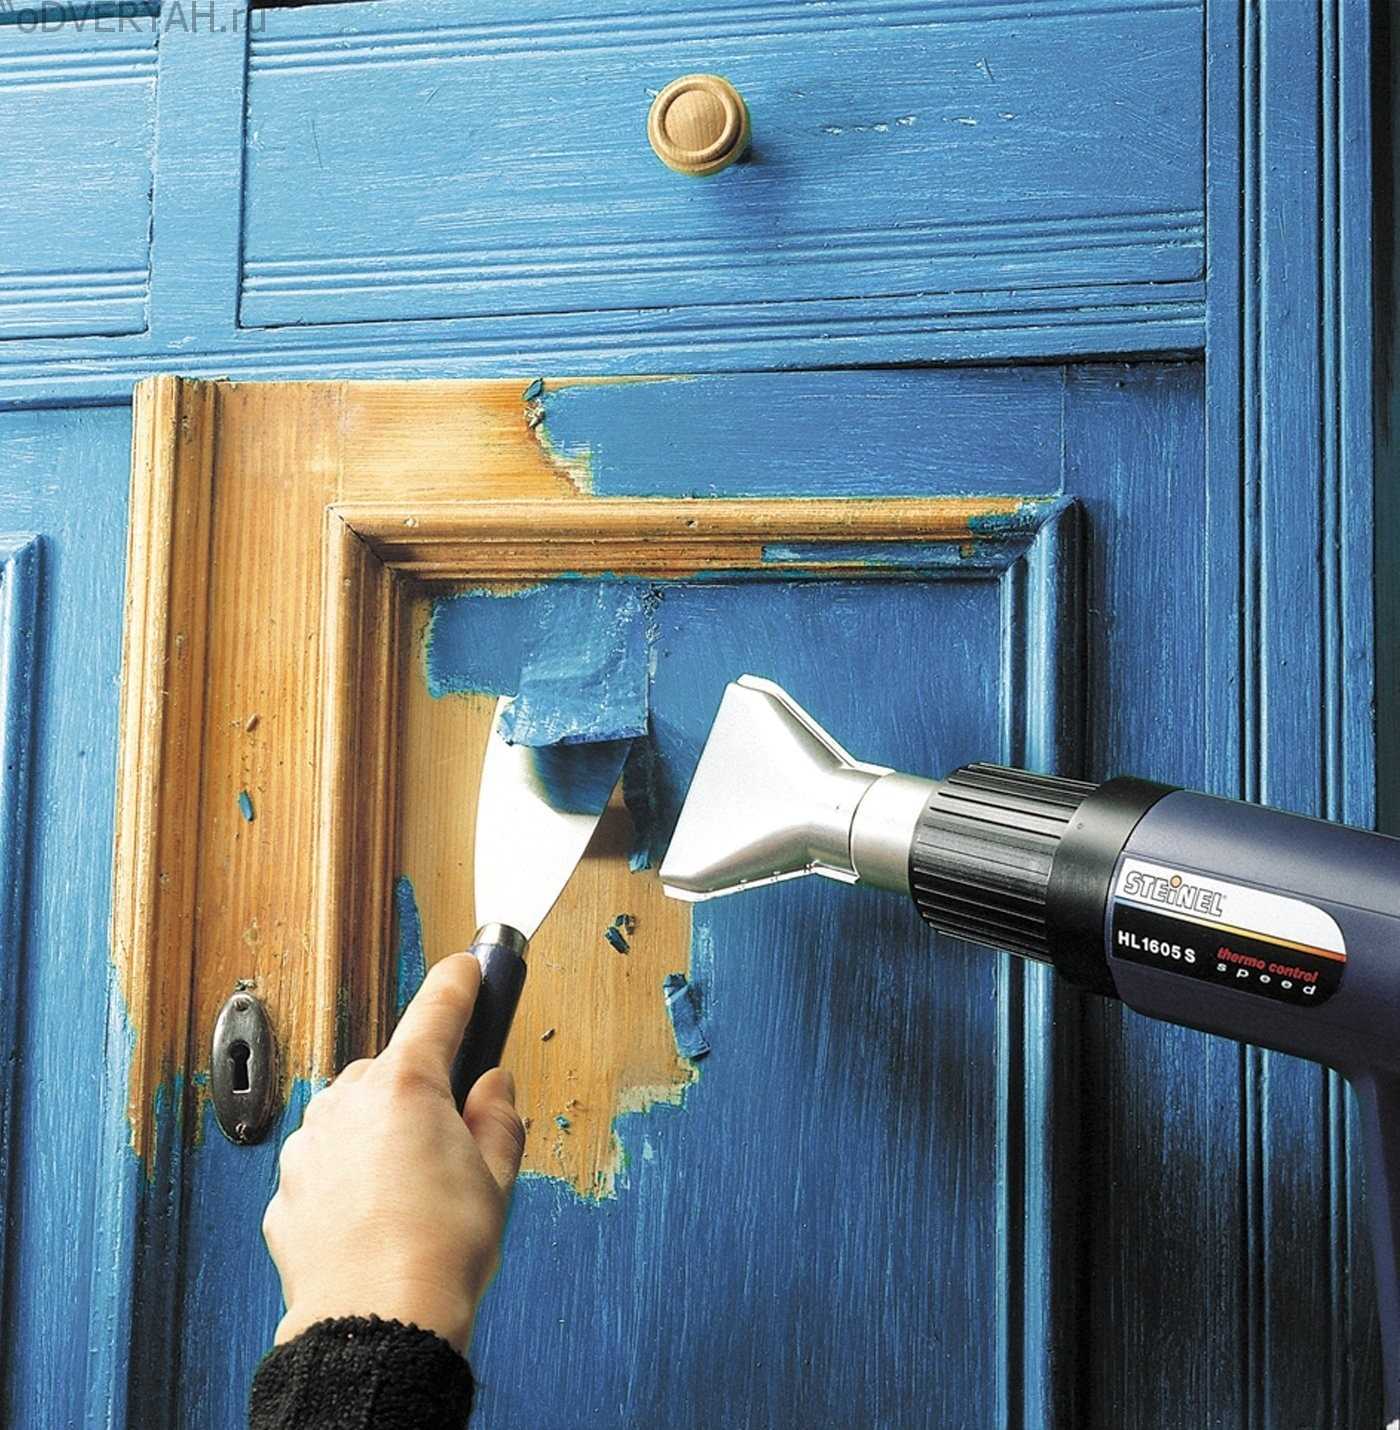 Шпонированные двери: секреты успешной реставрации